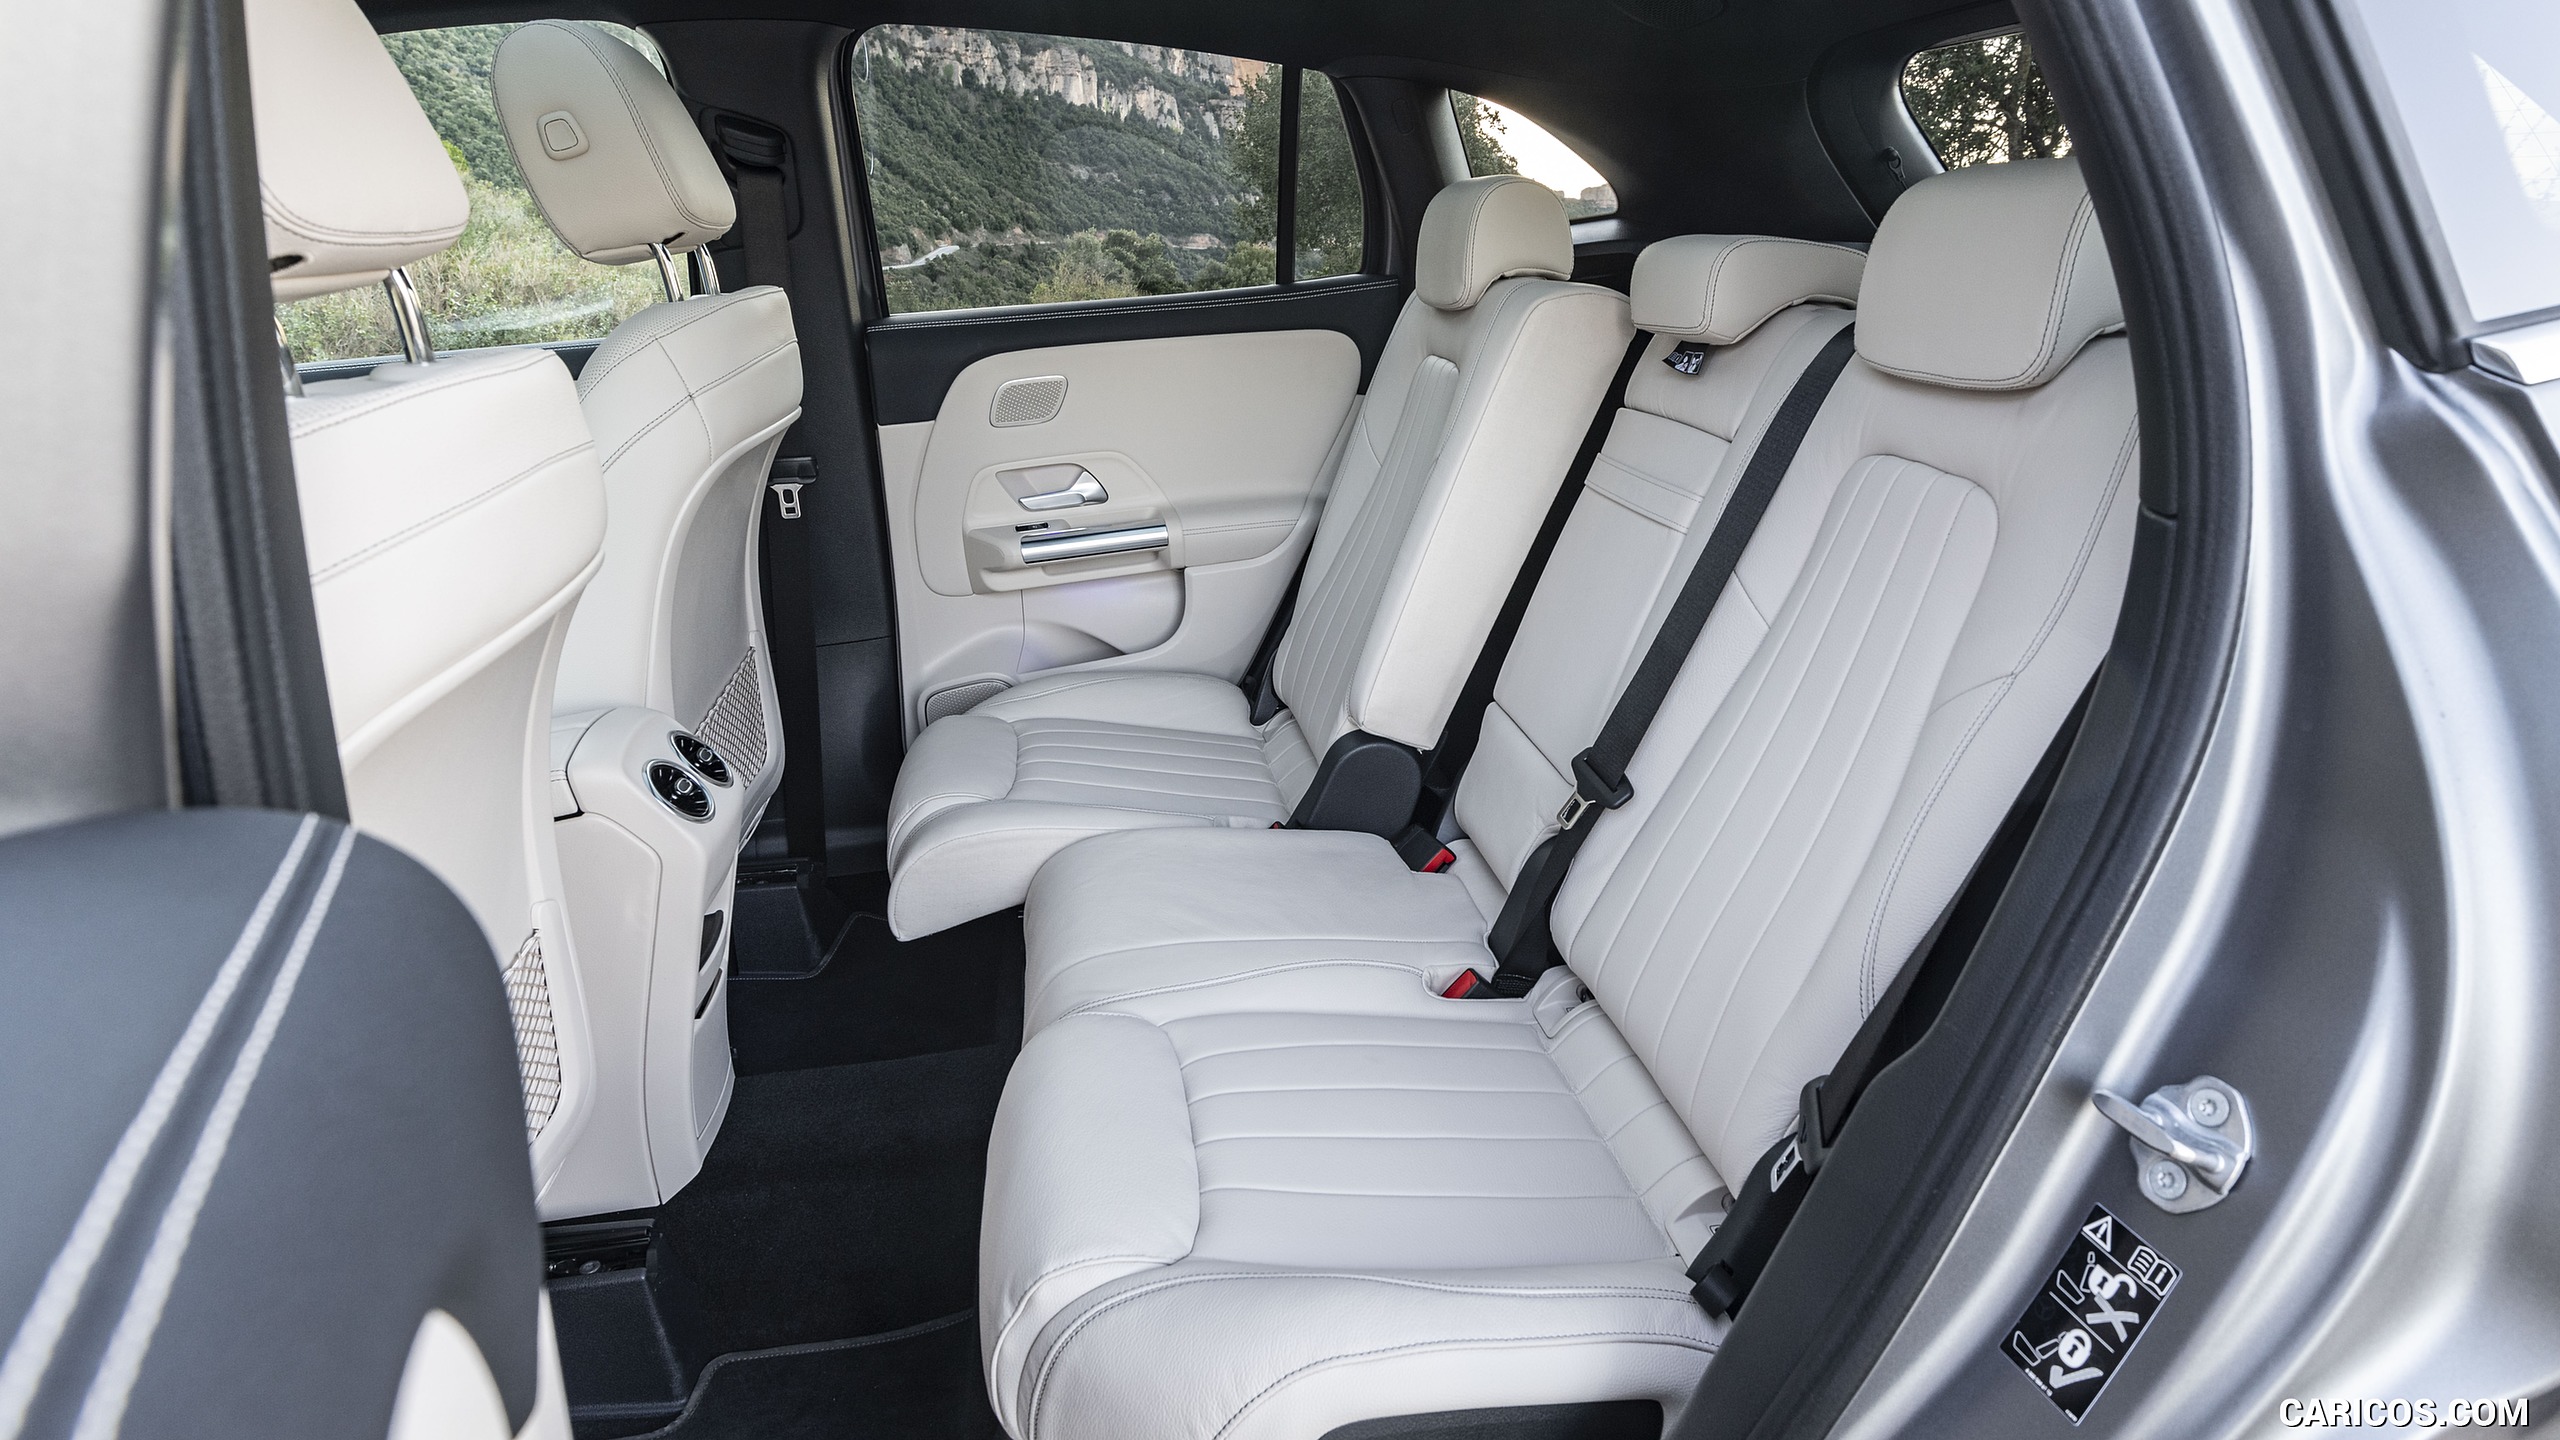 2021 Mercedes-Benz GLA - Interior, Rear Seats, #114 of 280